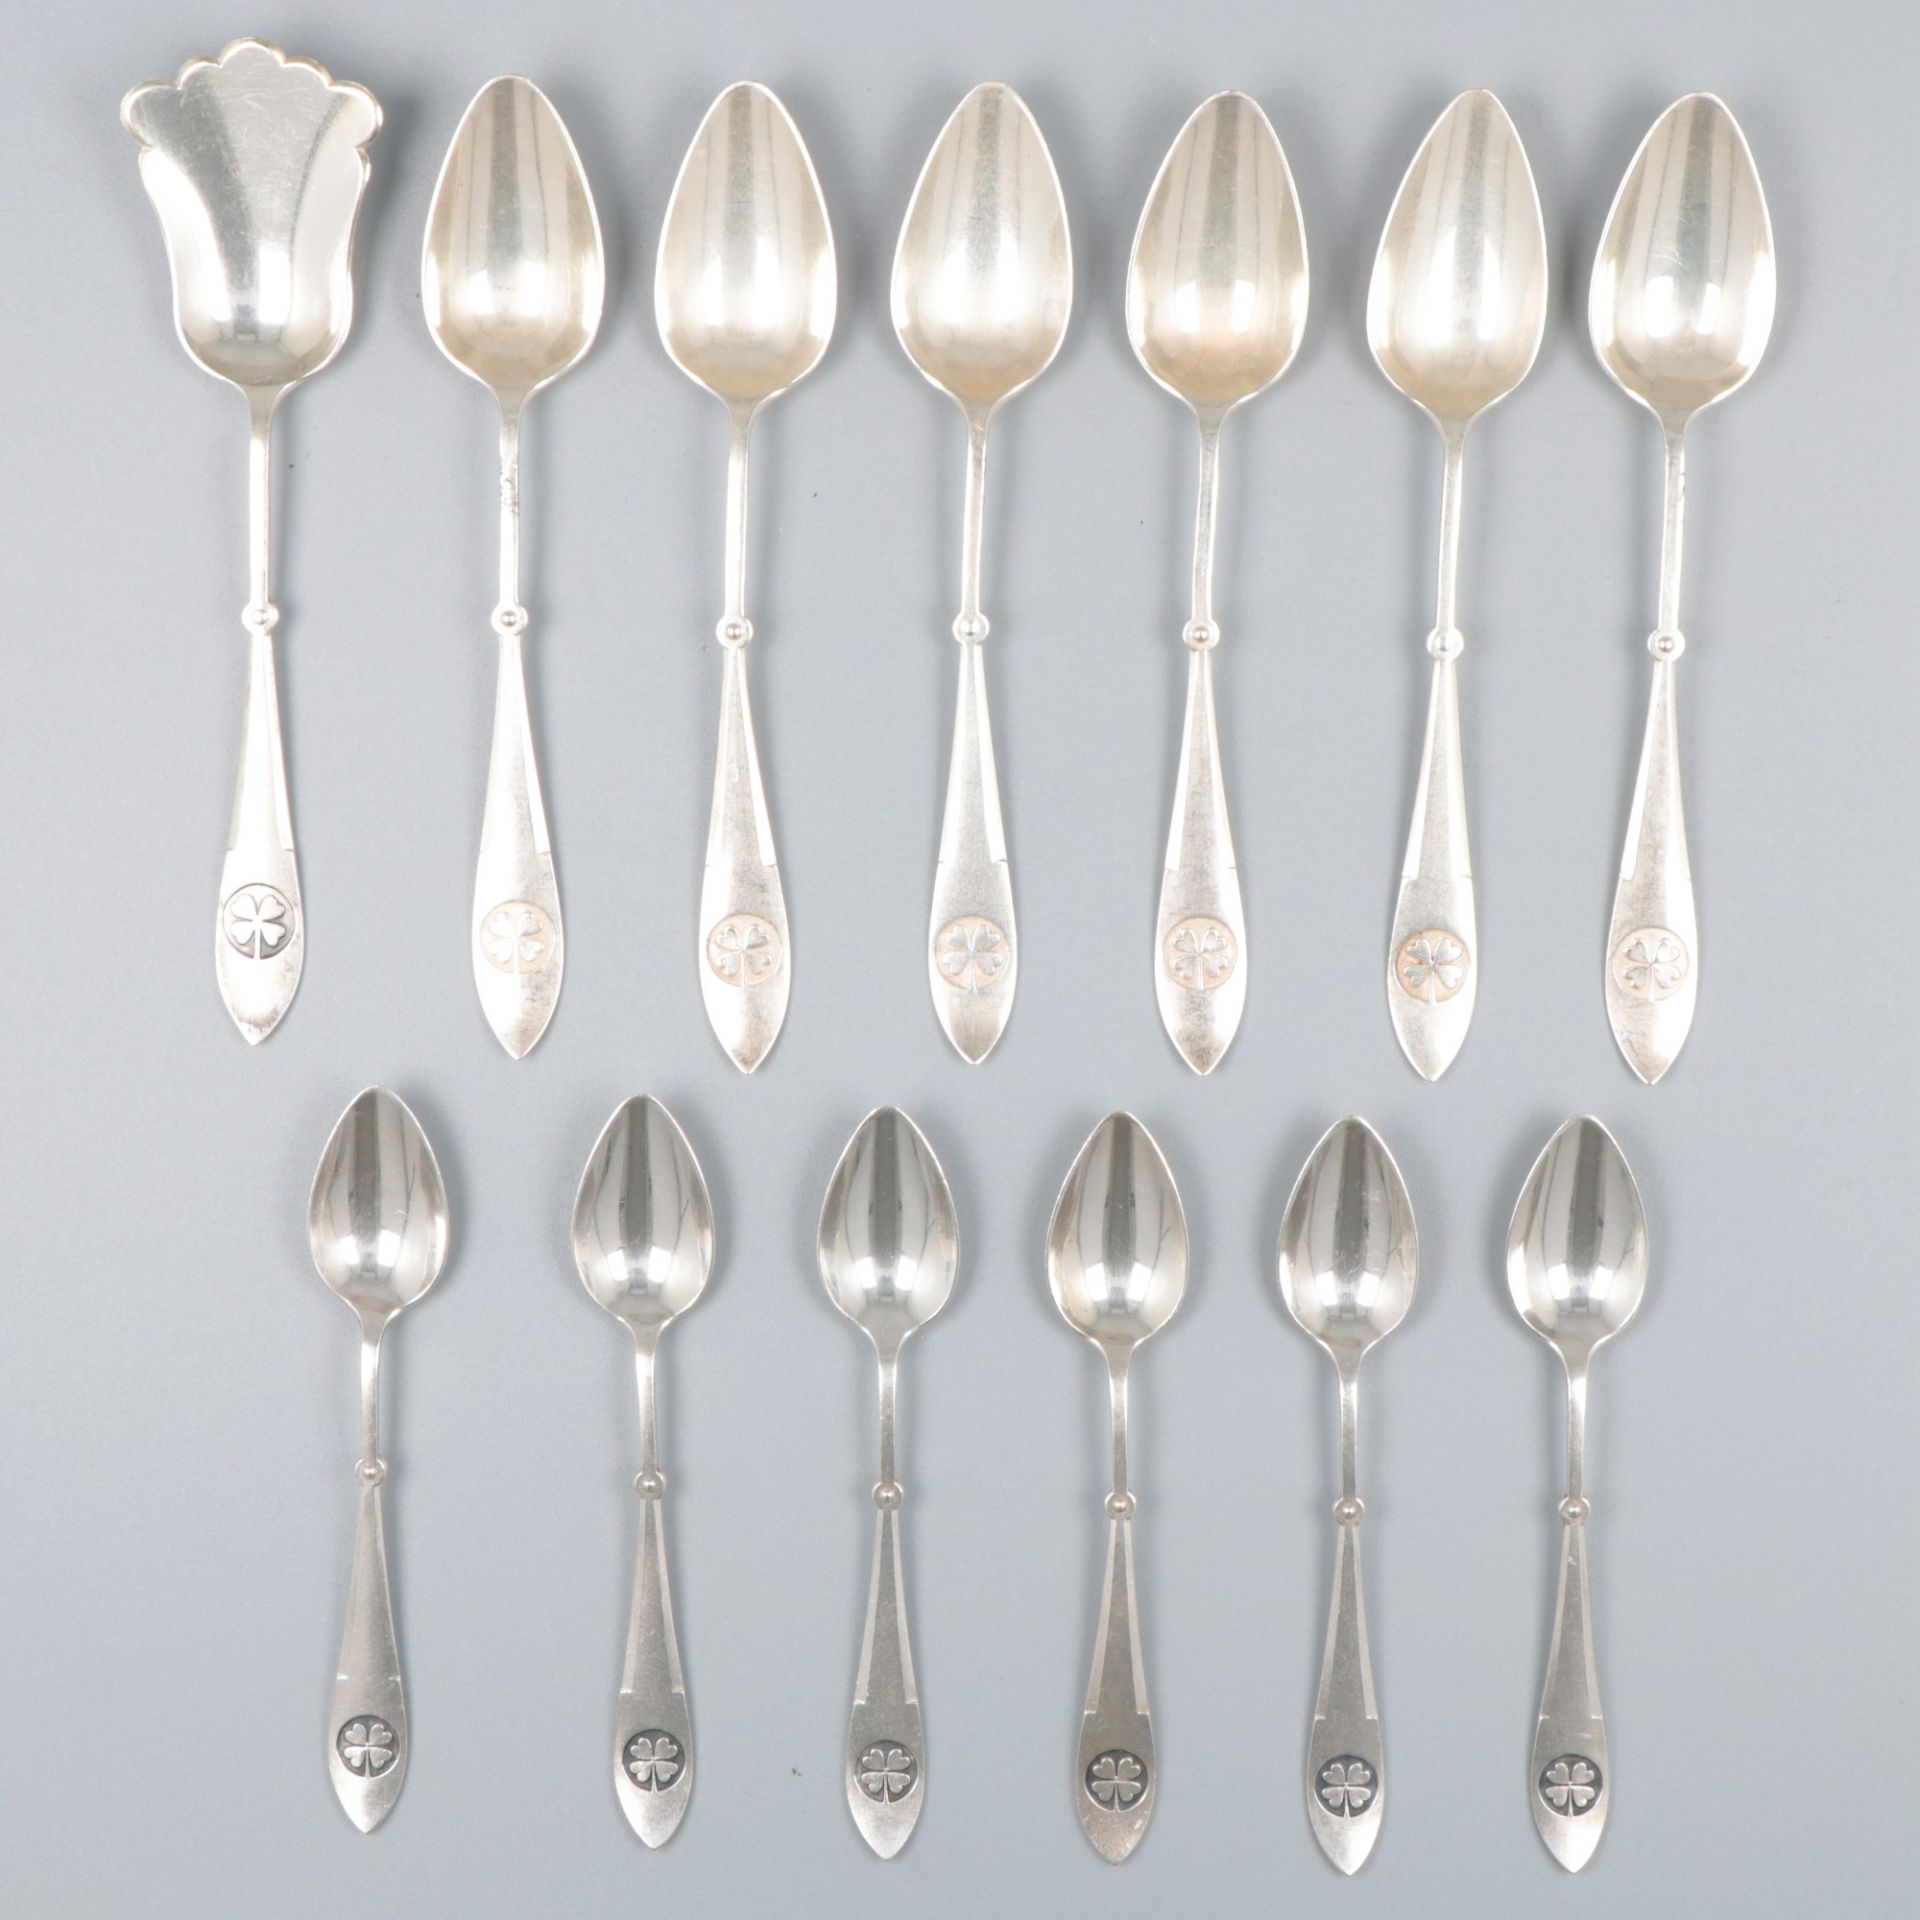 13-piece set mocha spoons & teaspoons with sugar scoop, silver.